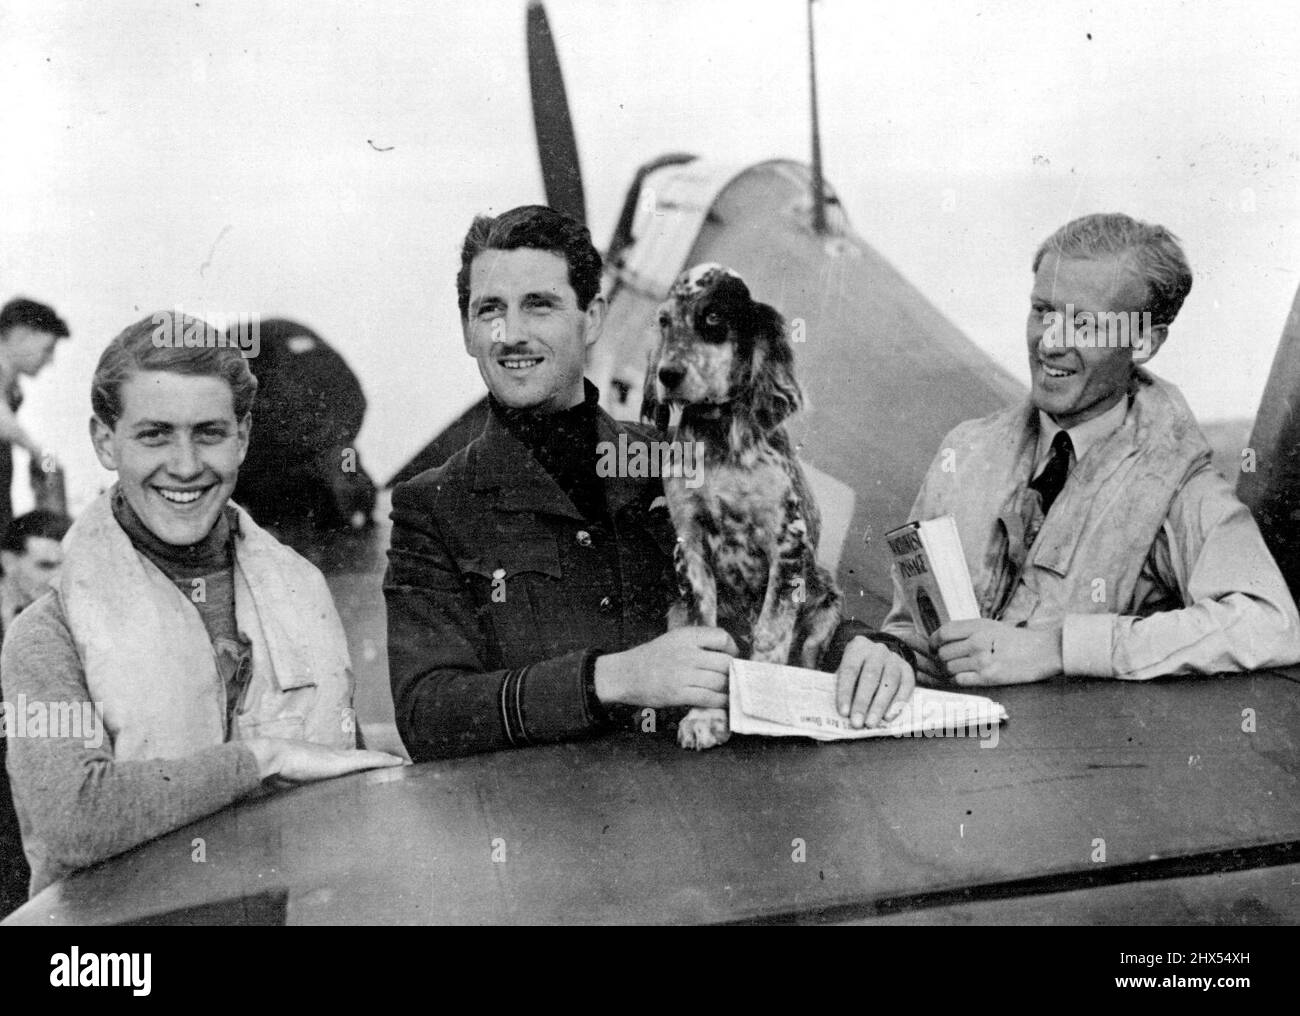 Escadron de chasseurs tchécoslovaque. Ces photos sont de l'escadron de chasse tchécoslovaque de la R.A.F. Qui, bien que récemment formé, a déjà un certain nombre de victoires à son crédit. Dirigé par deux officiers britanniques de la R.A.F., l'escadron a représenté sept Jaguars de Messerschmitt et un Dornier 215 en un seul engagement. L'escadron est équipé de Hurricanes. Les trois commandants de vol britanniques de l'escadron de la Tchélvak, avec la mascotte de l'escadron. 14 août 1942. (Photo du fonctionnaire britannique pour la photo du ministère) Banque D'Images